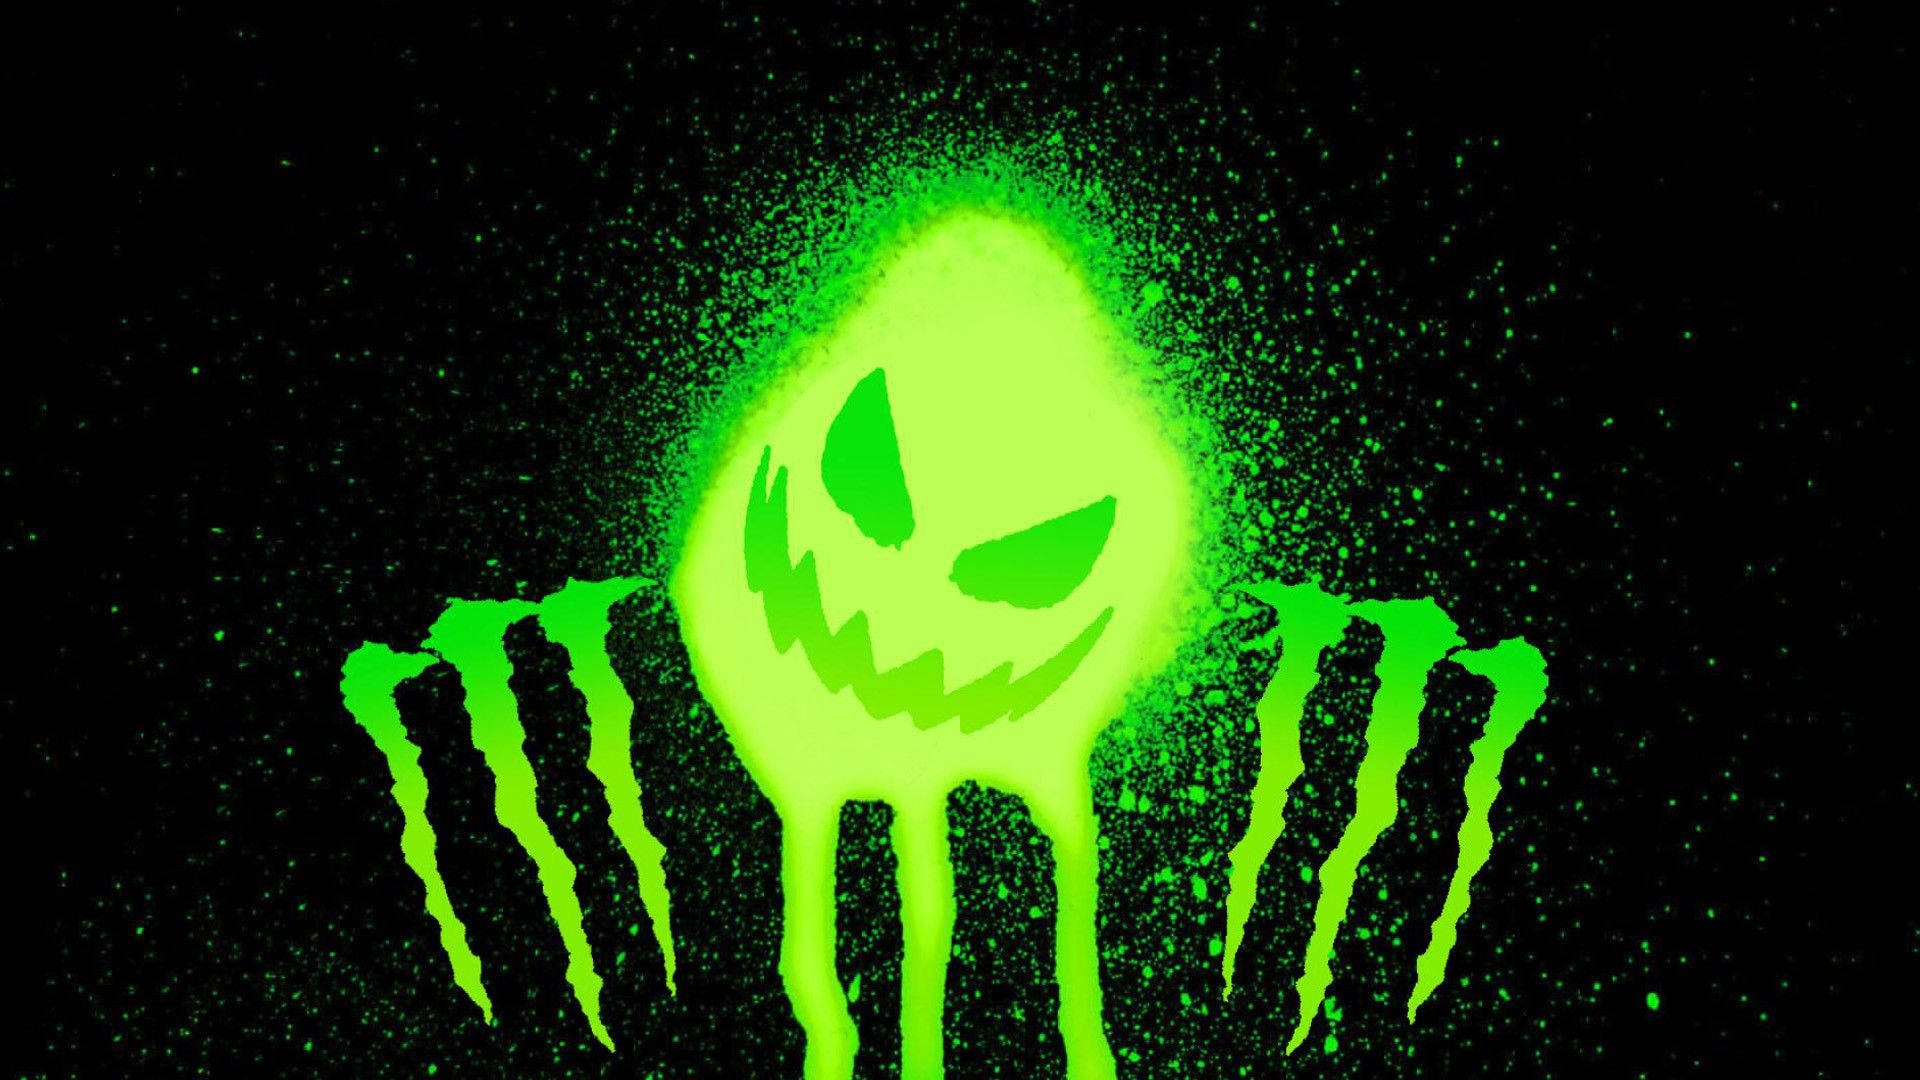 Caption: Vibrant Green Monster Logo